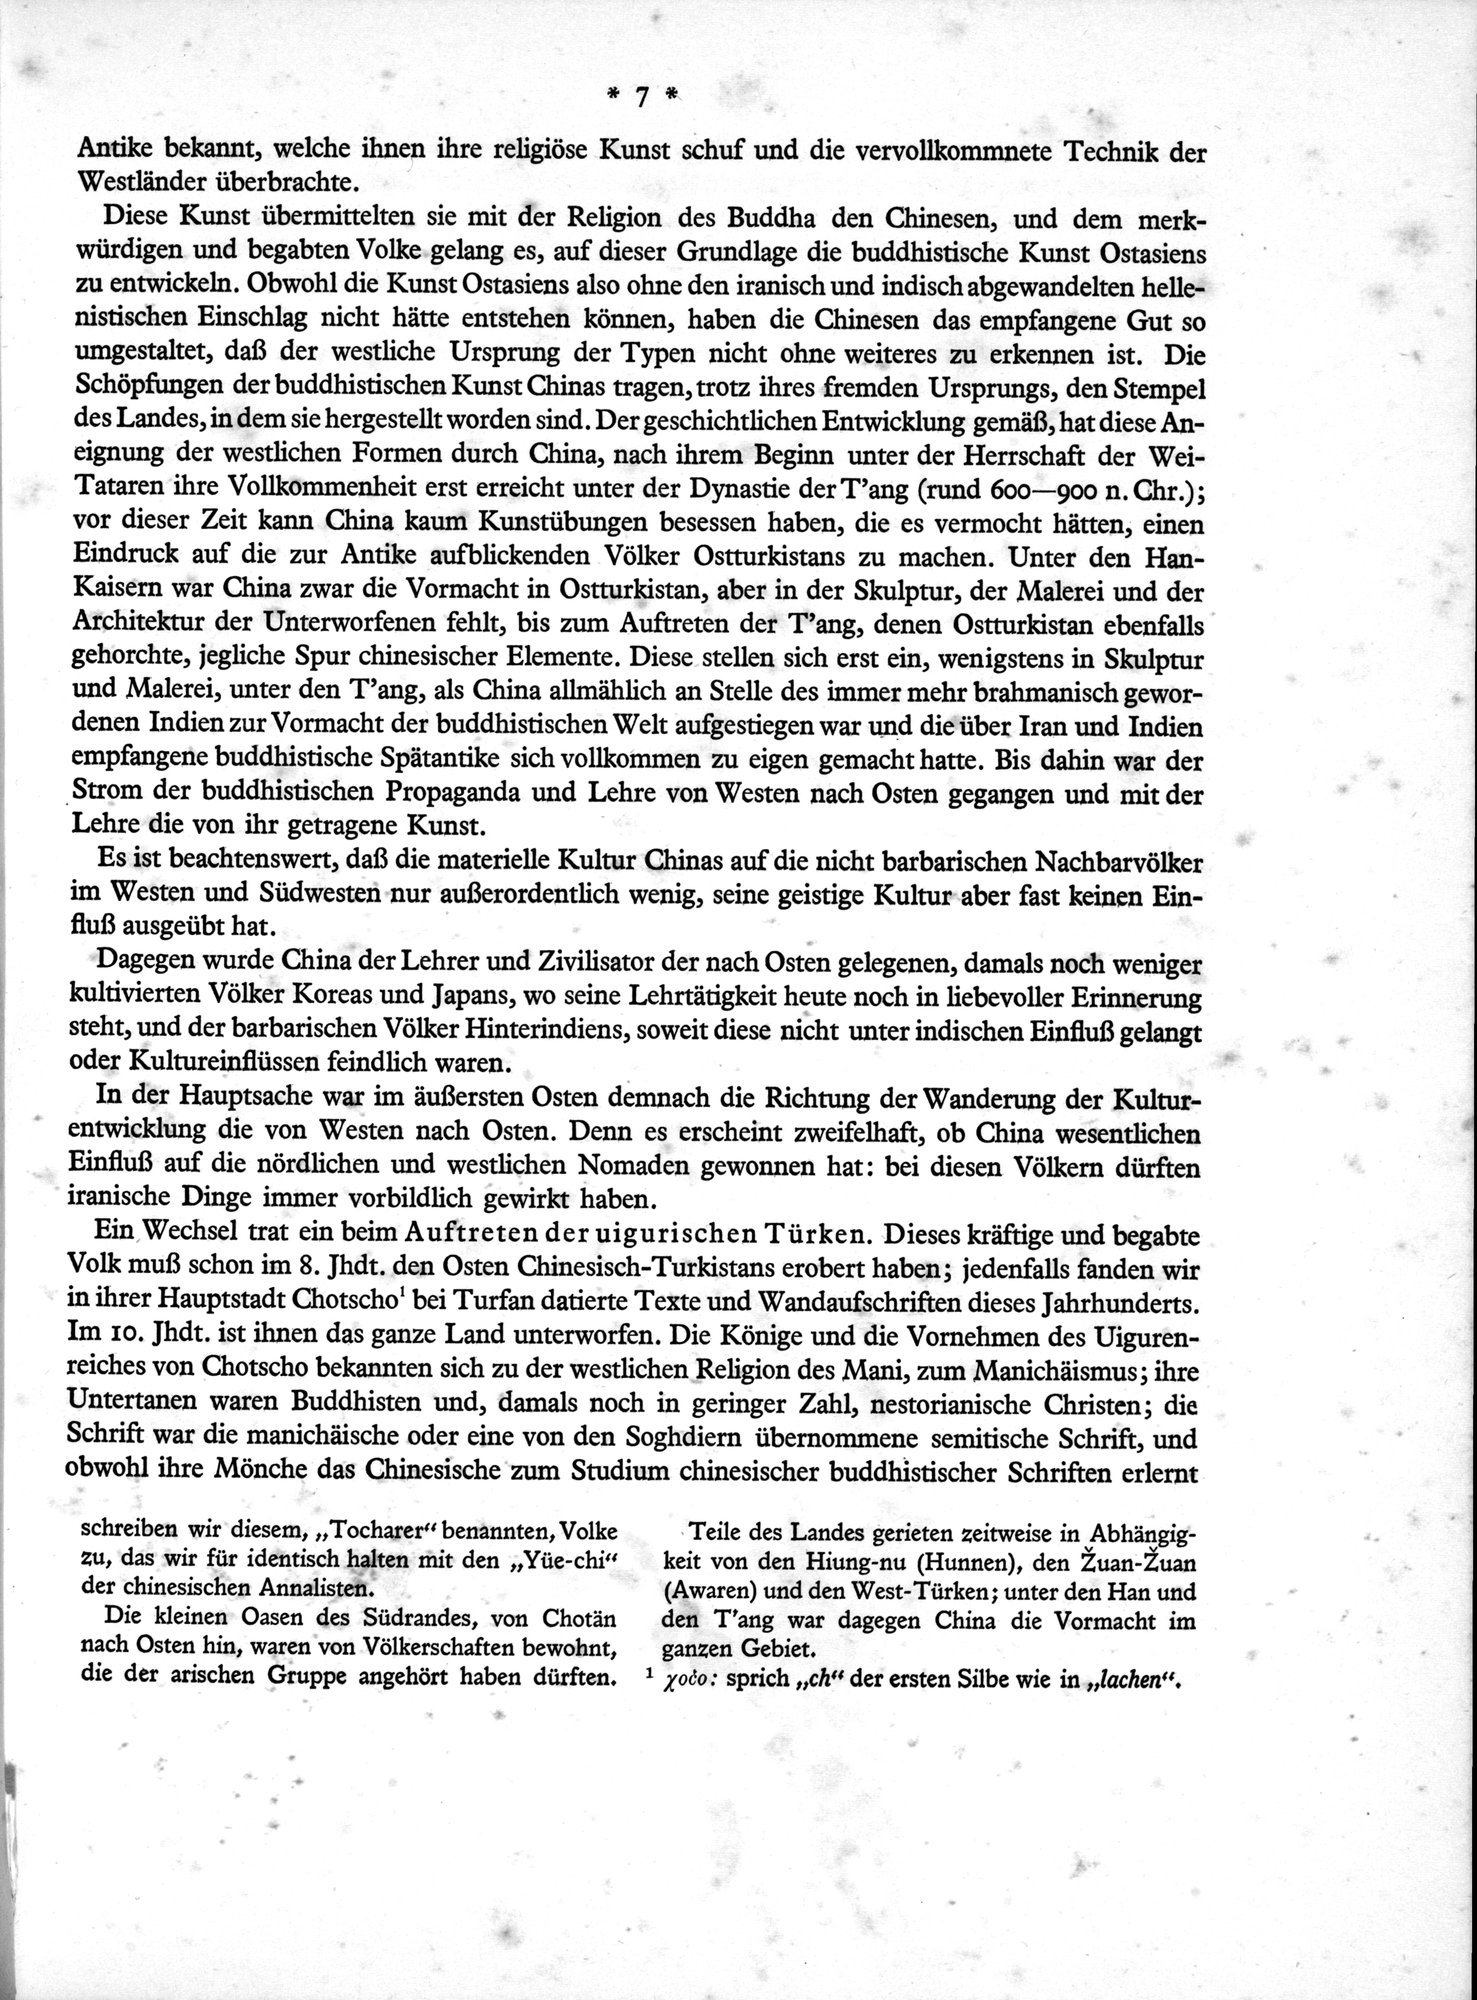 Bilderatlas zur Kunst und Kulturgeschichte Mittel-Asiens : vol.1 / Page 11 (Grayscale High Resolution Image)